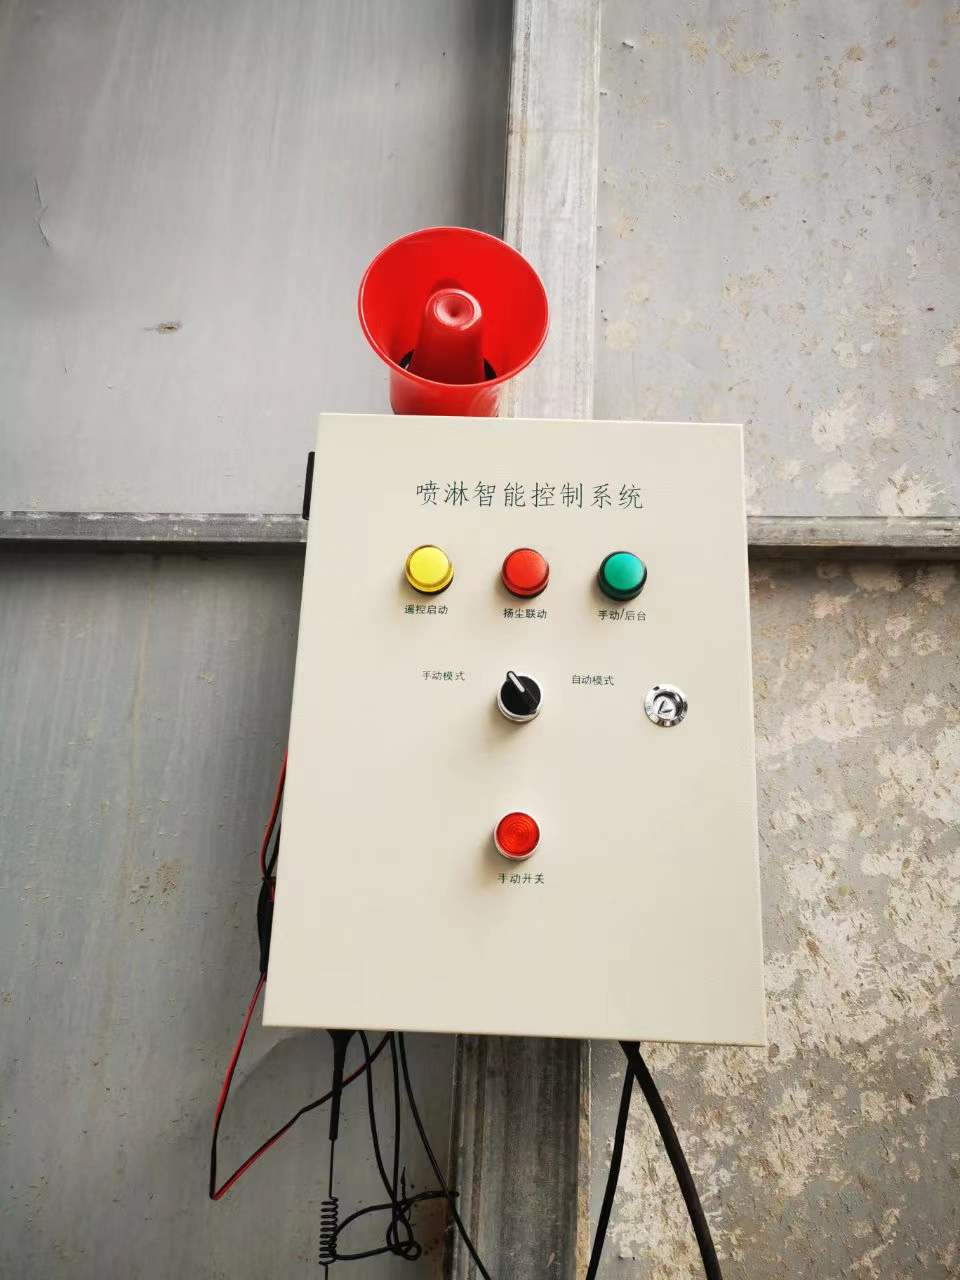 福州远程联动控制系统生产厂家